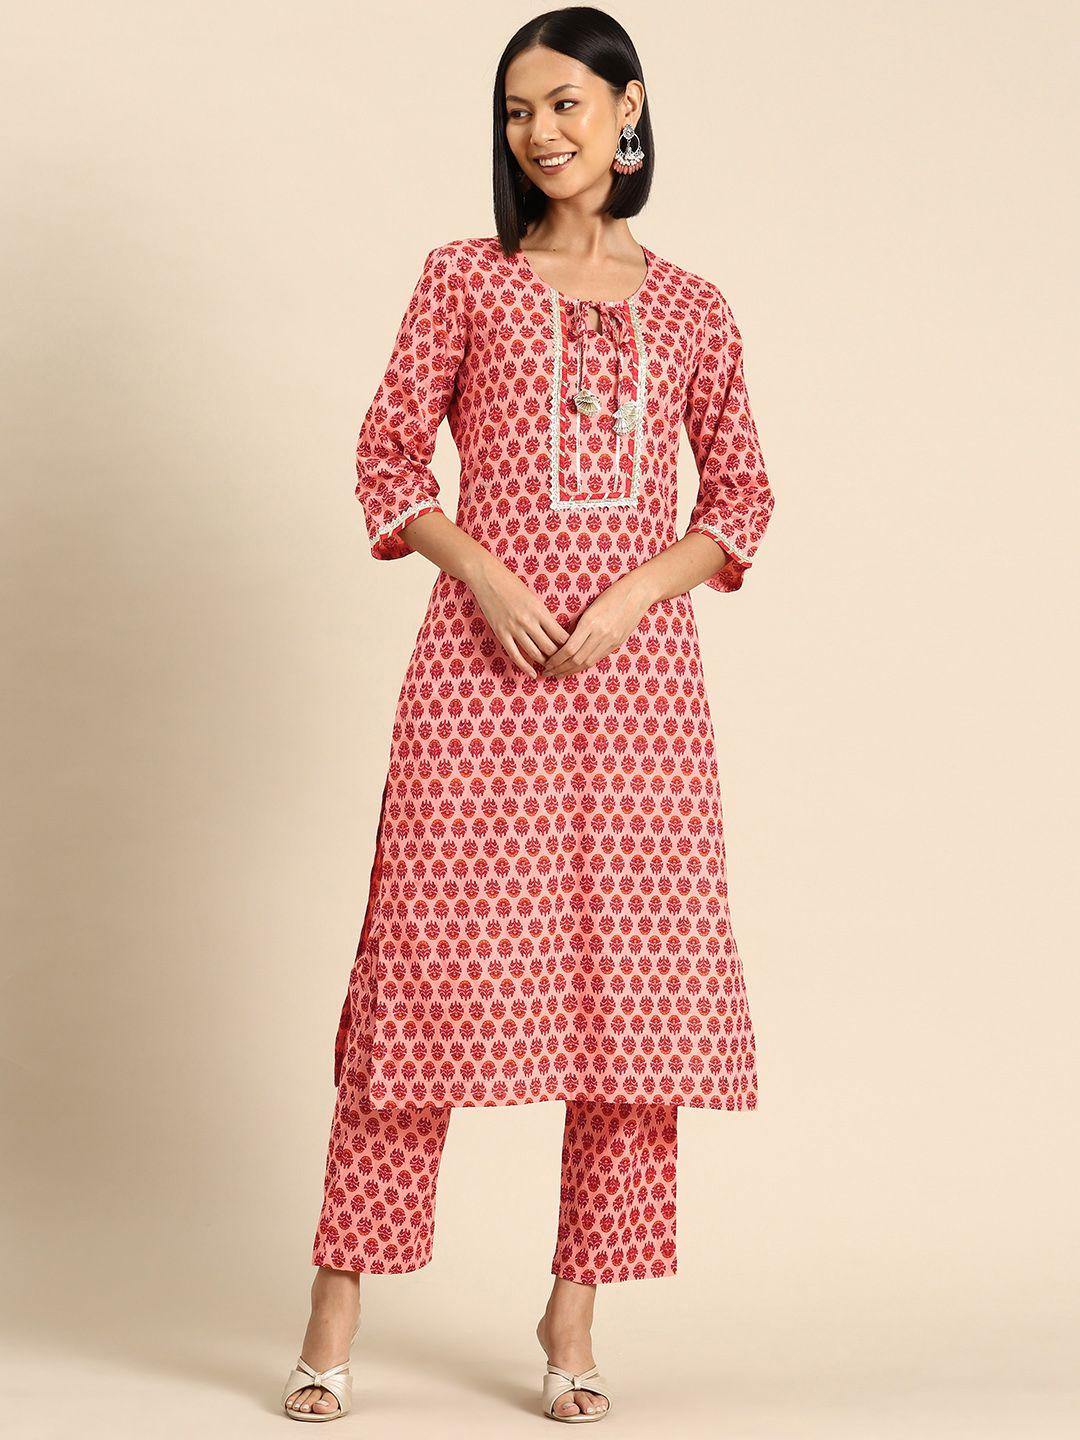 mabish by sonal jain women ethnic motifs printed gotta patti cotton kurta with palazzos